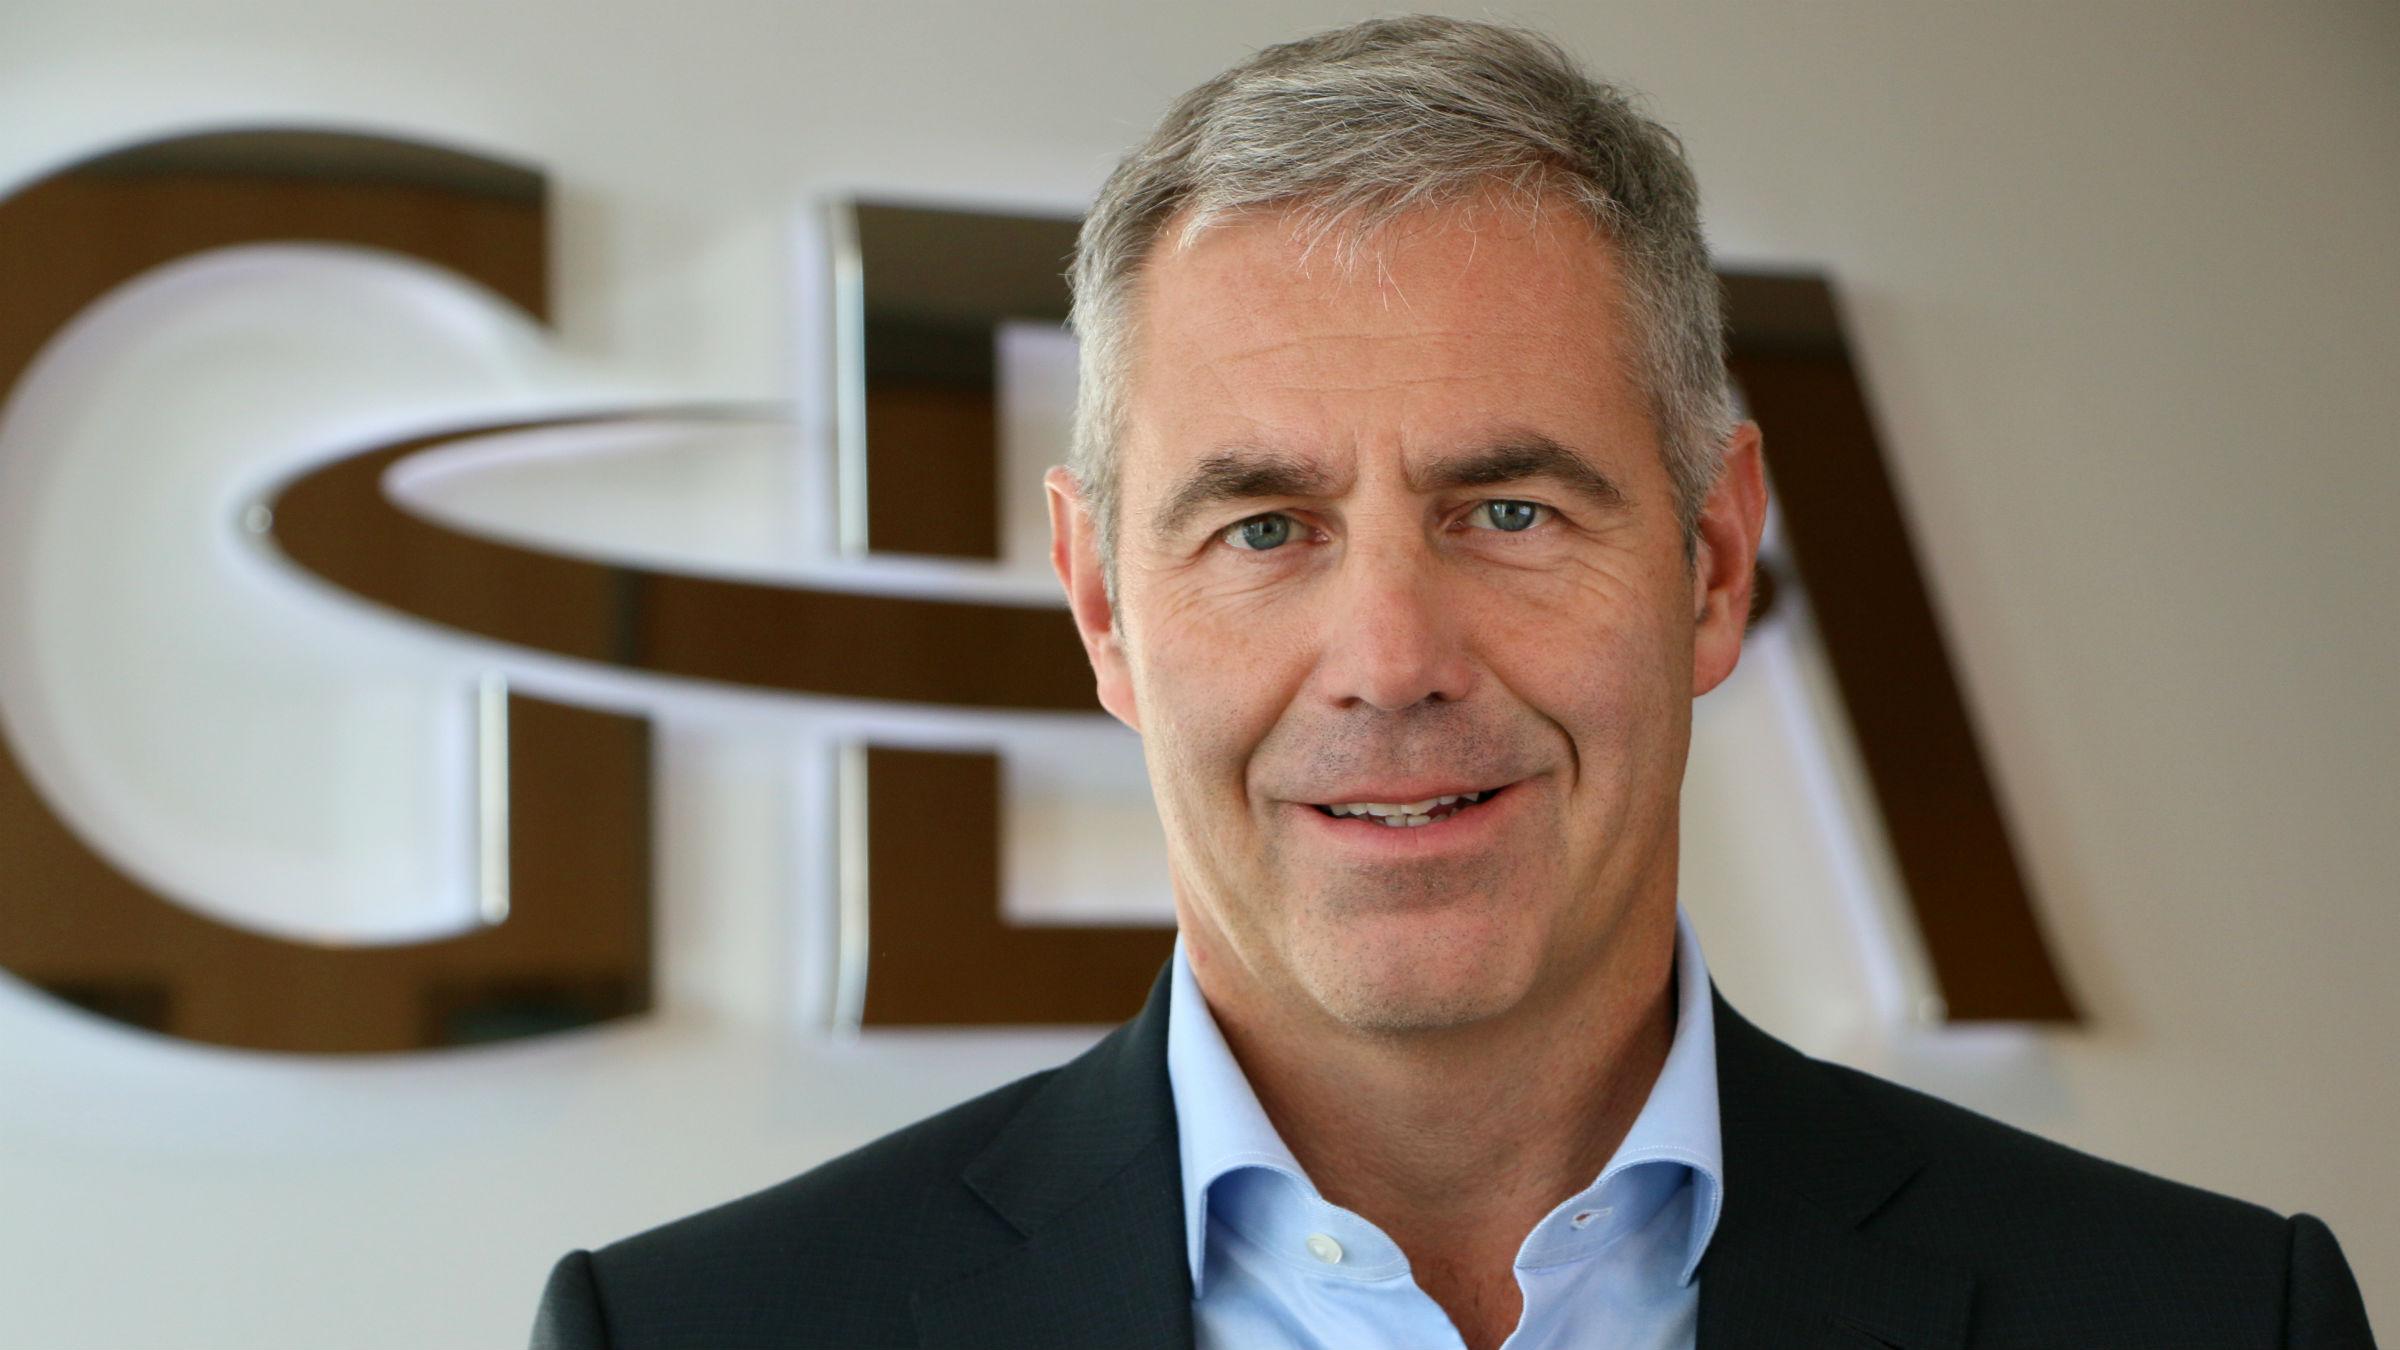 Stefan Klebert set to become GEA’s new CEO